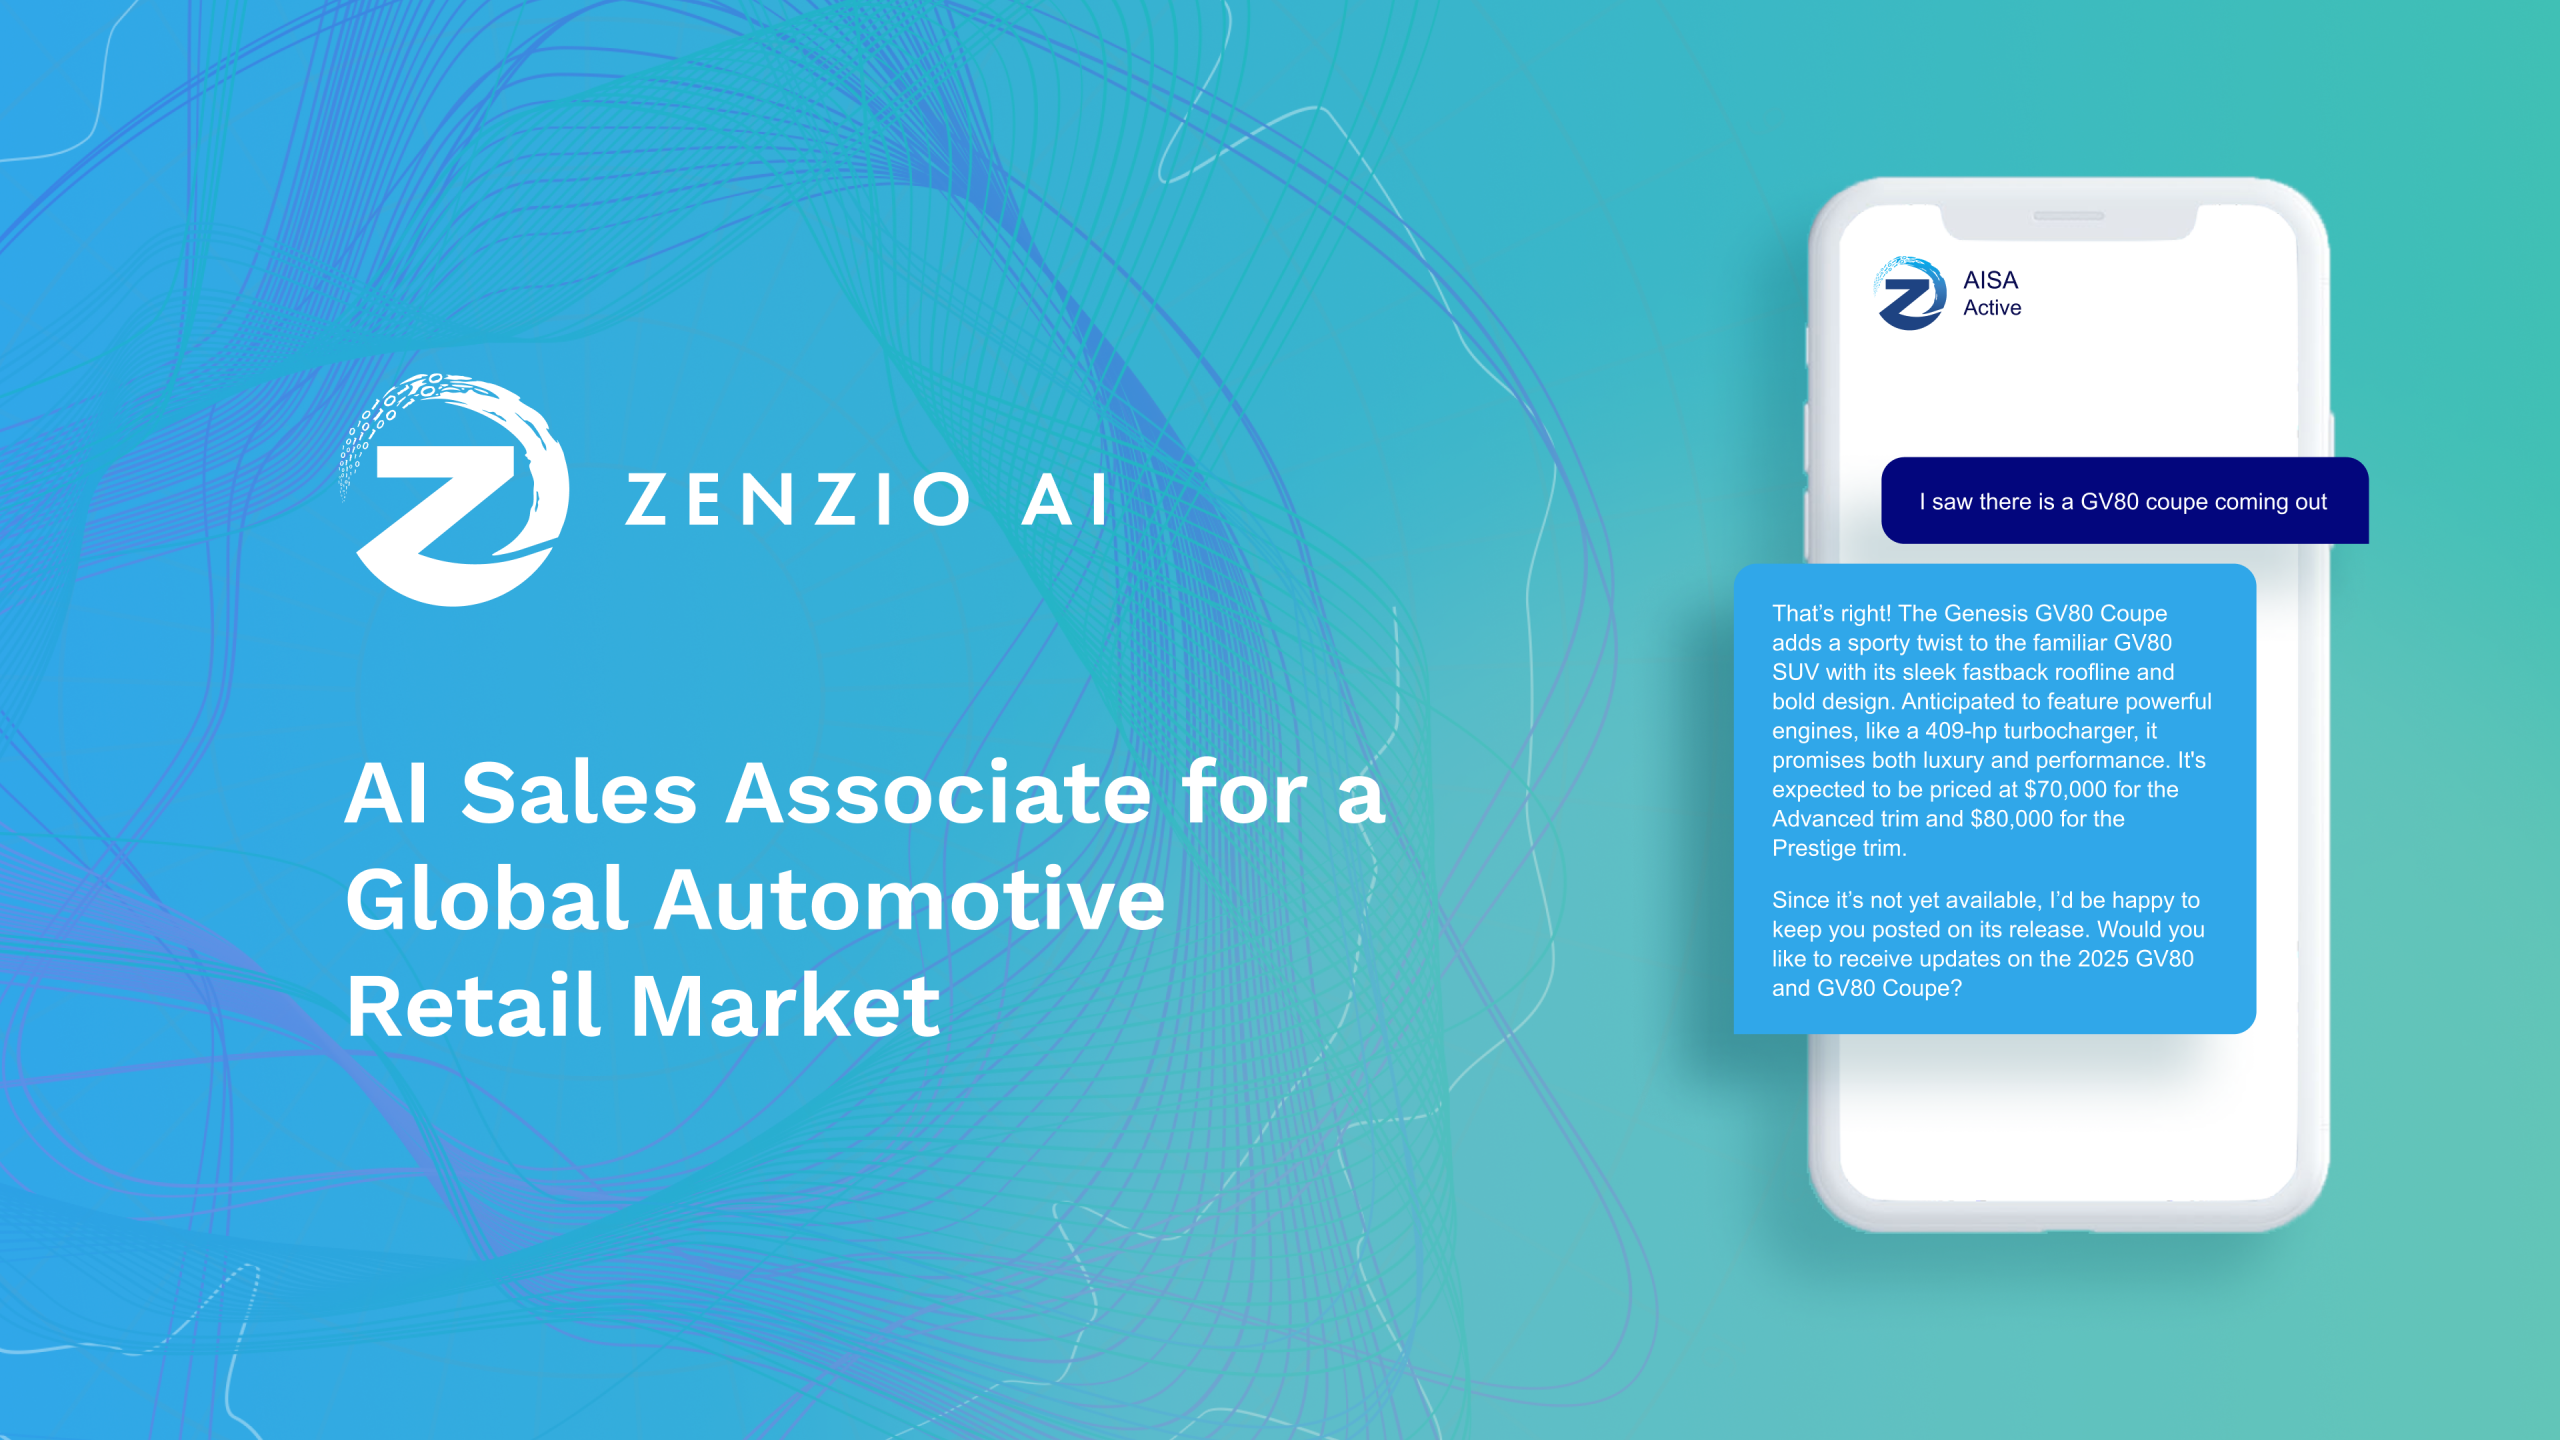 Zenzio AI, an AI Sales Associate for a global automotive retail market